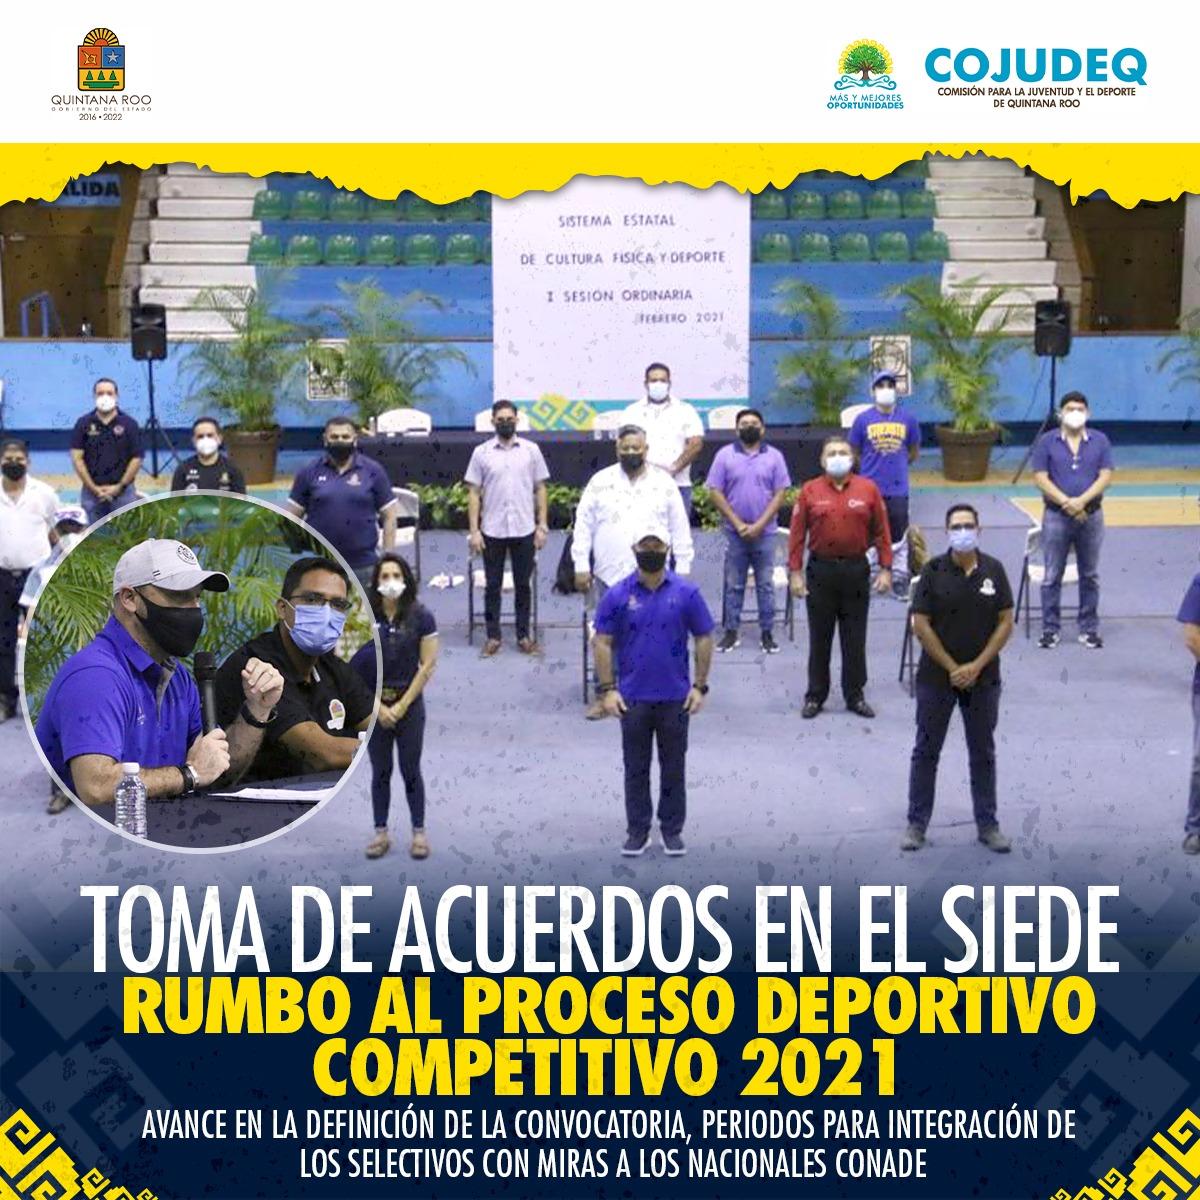 Toma de acuerdos en el SIEDE rumbo al proceso deportivo competitivo 2021